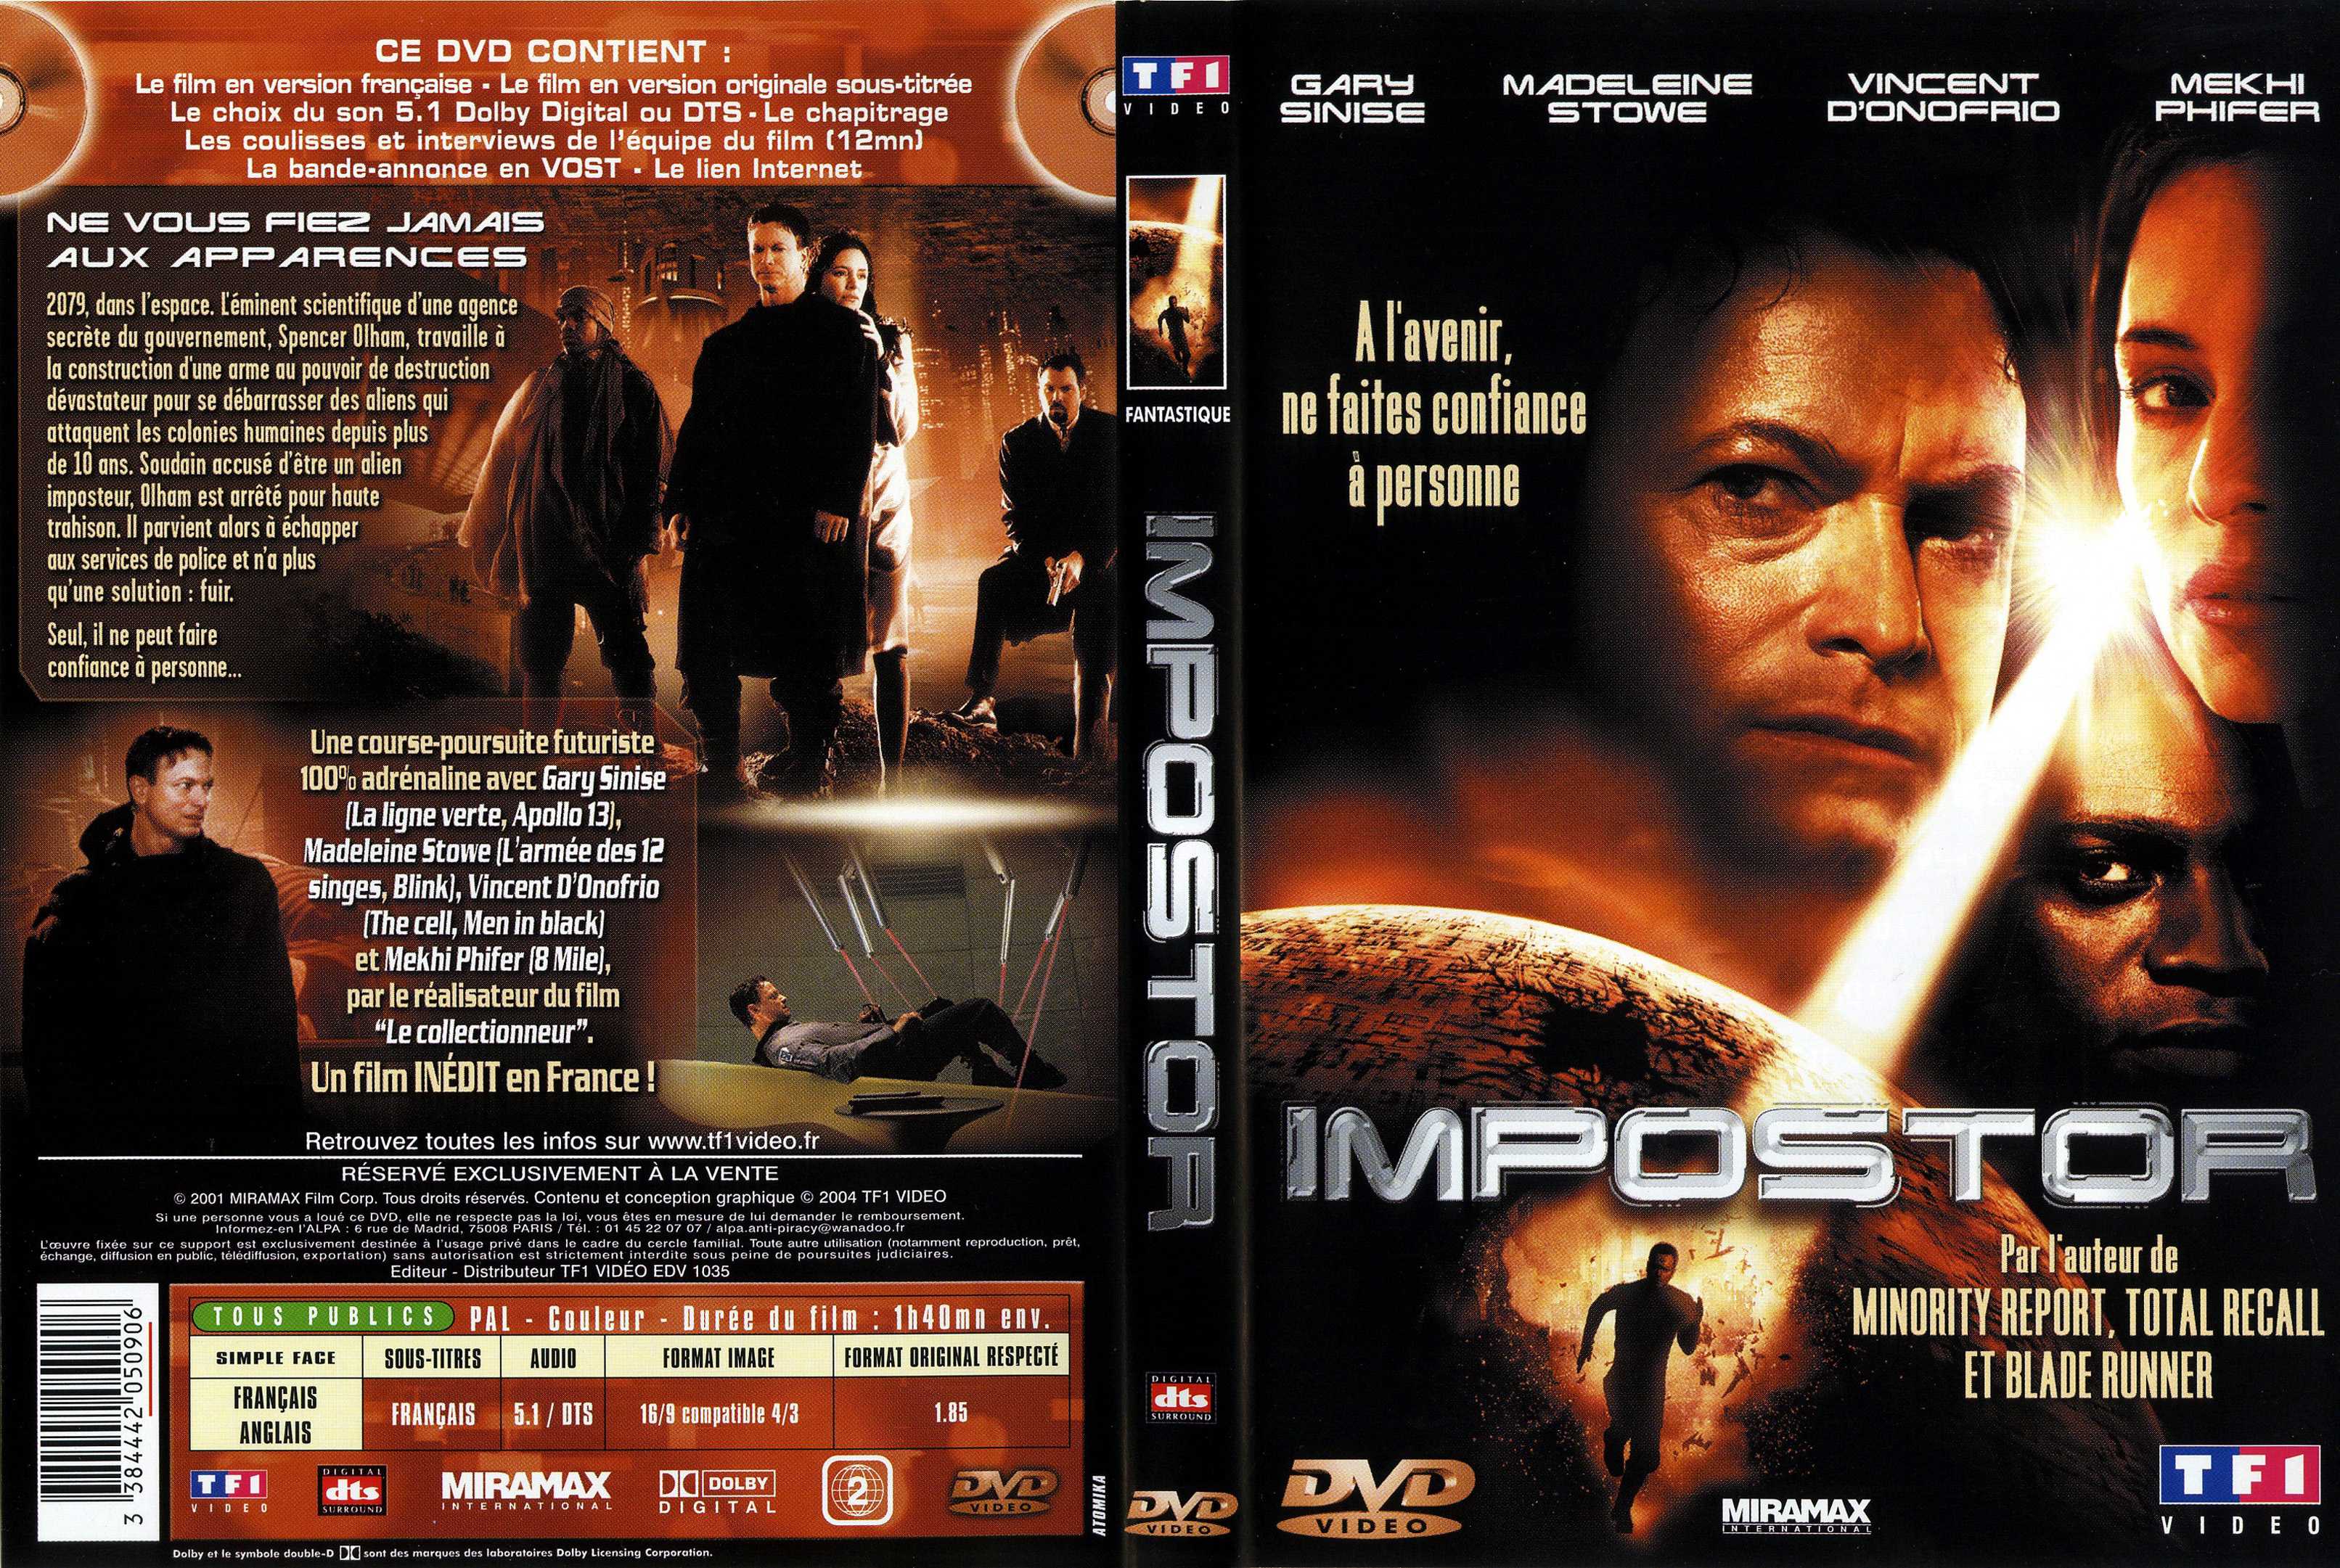 Jaquette DVD Impostor v2